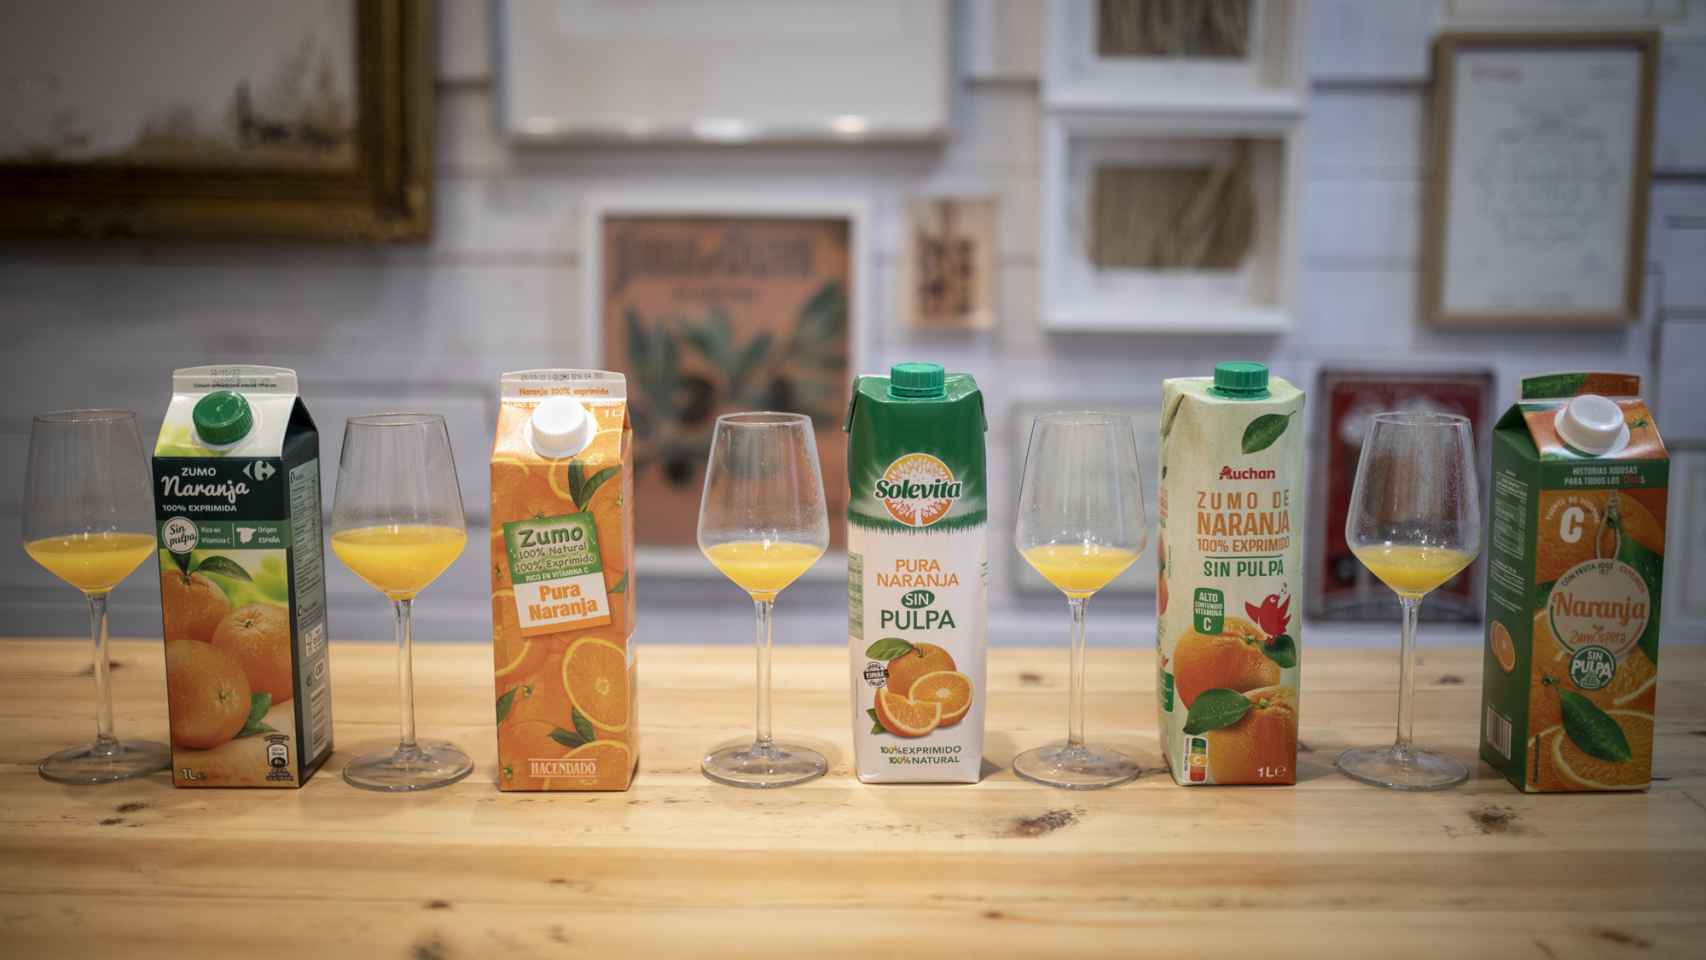 Los cinco zumos de naranjas 100% exprimidas y sin pulpa de los supermercados testados en la cata.